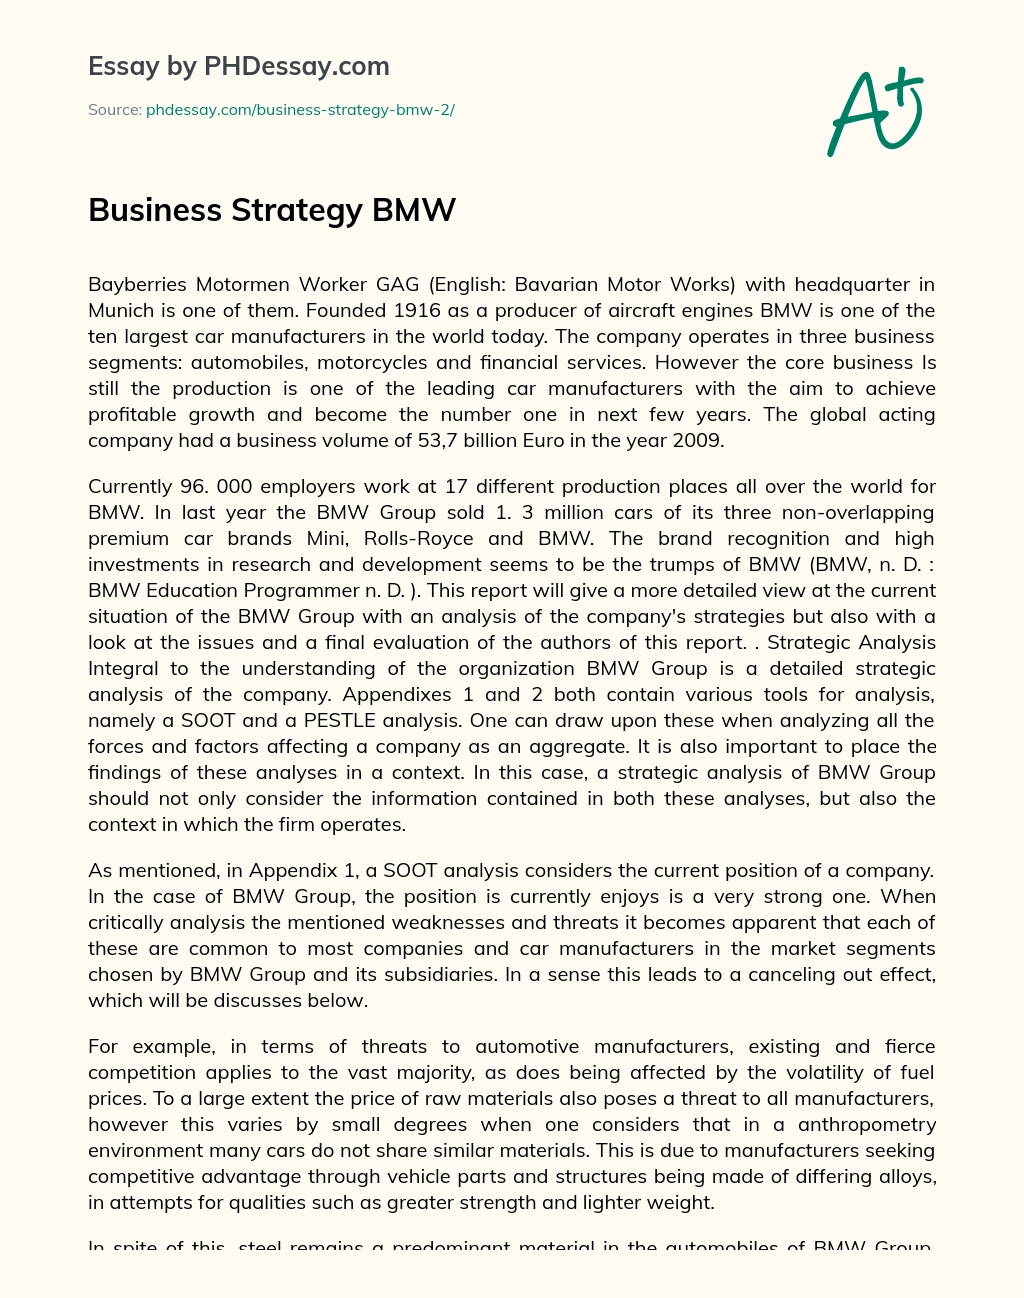 Business Strategy BMW essay